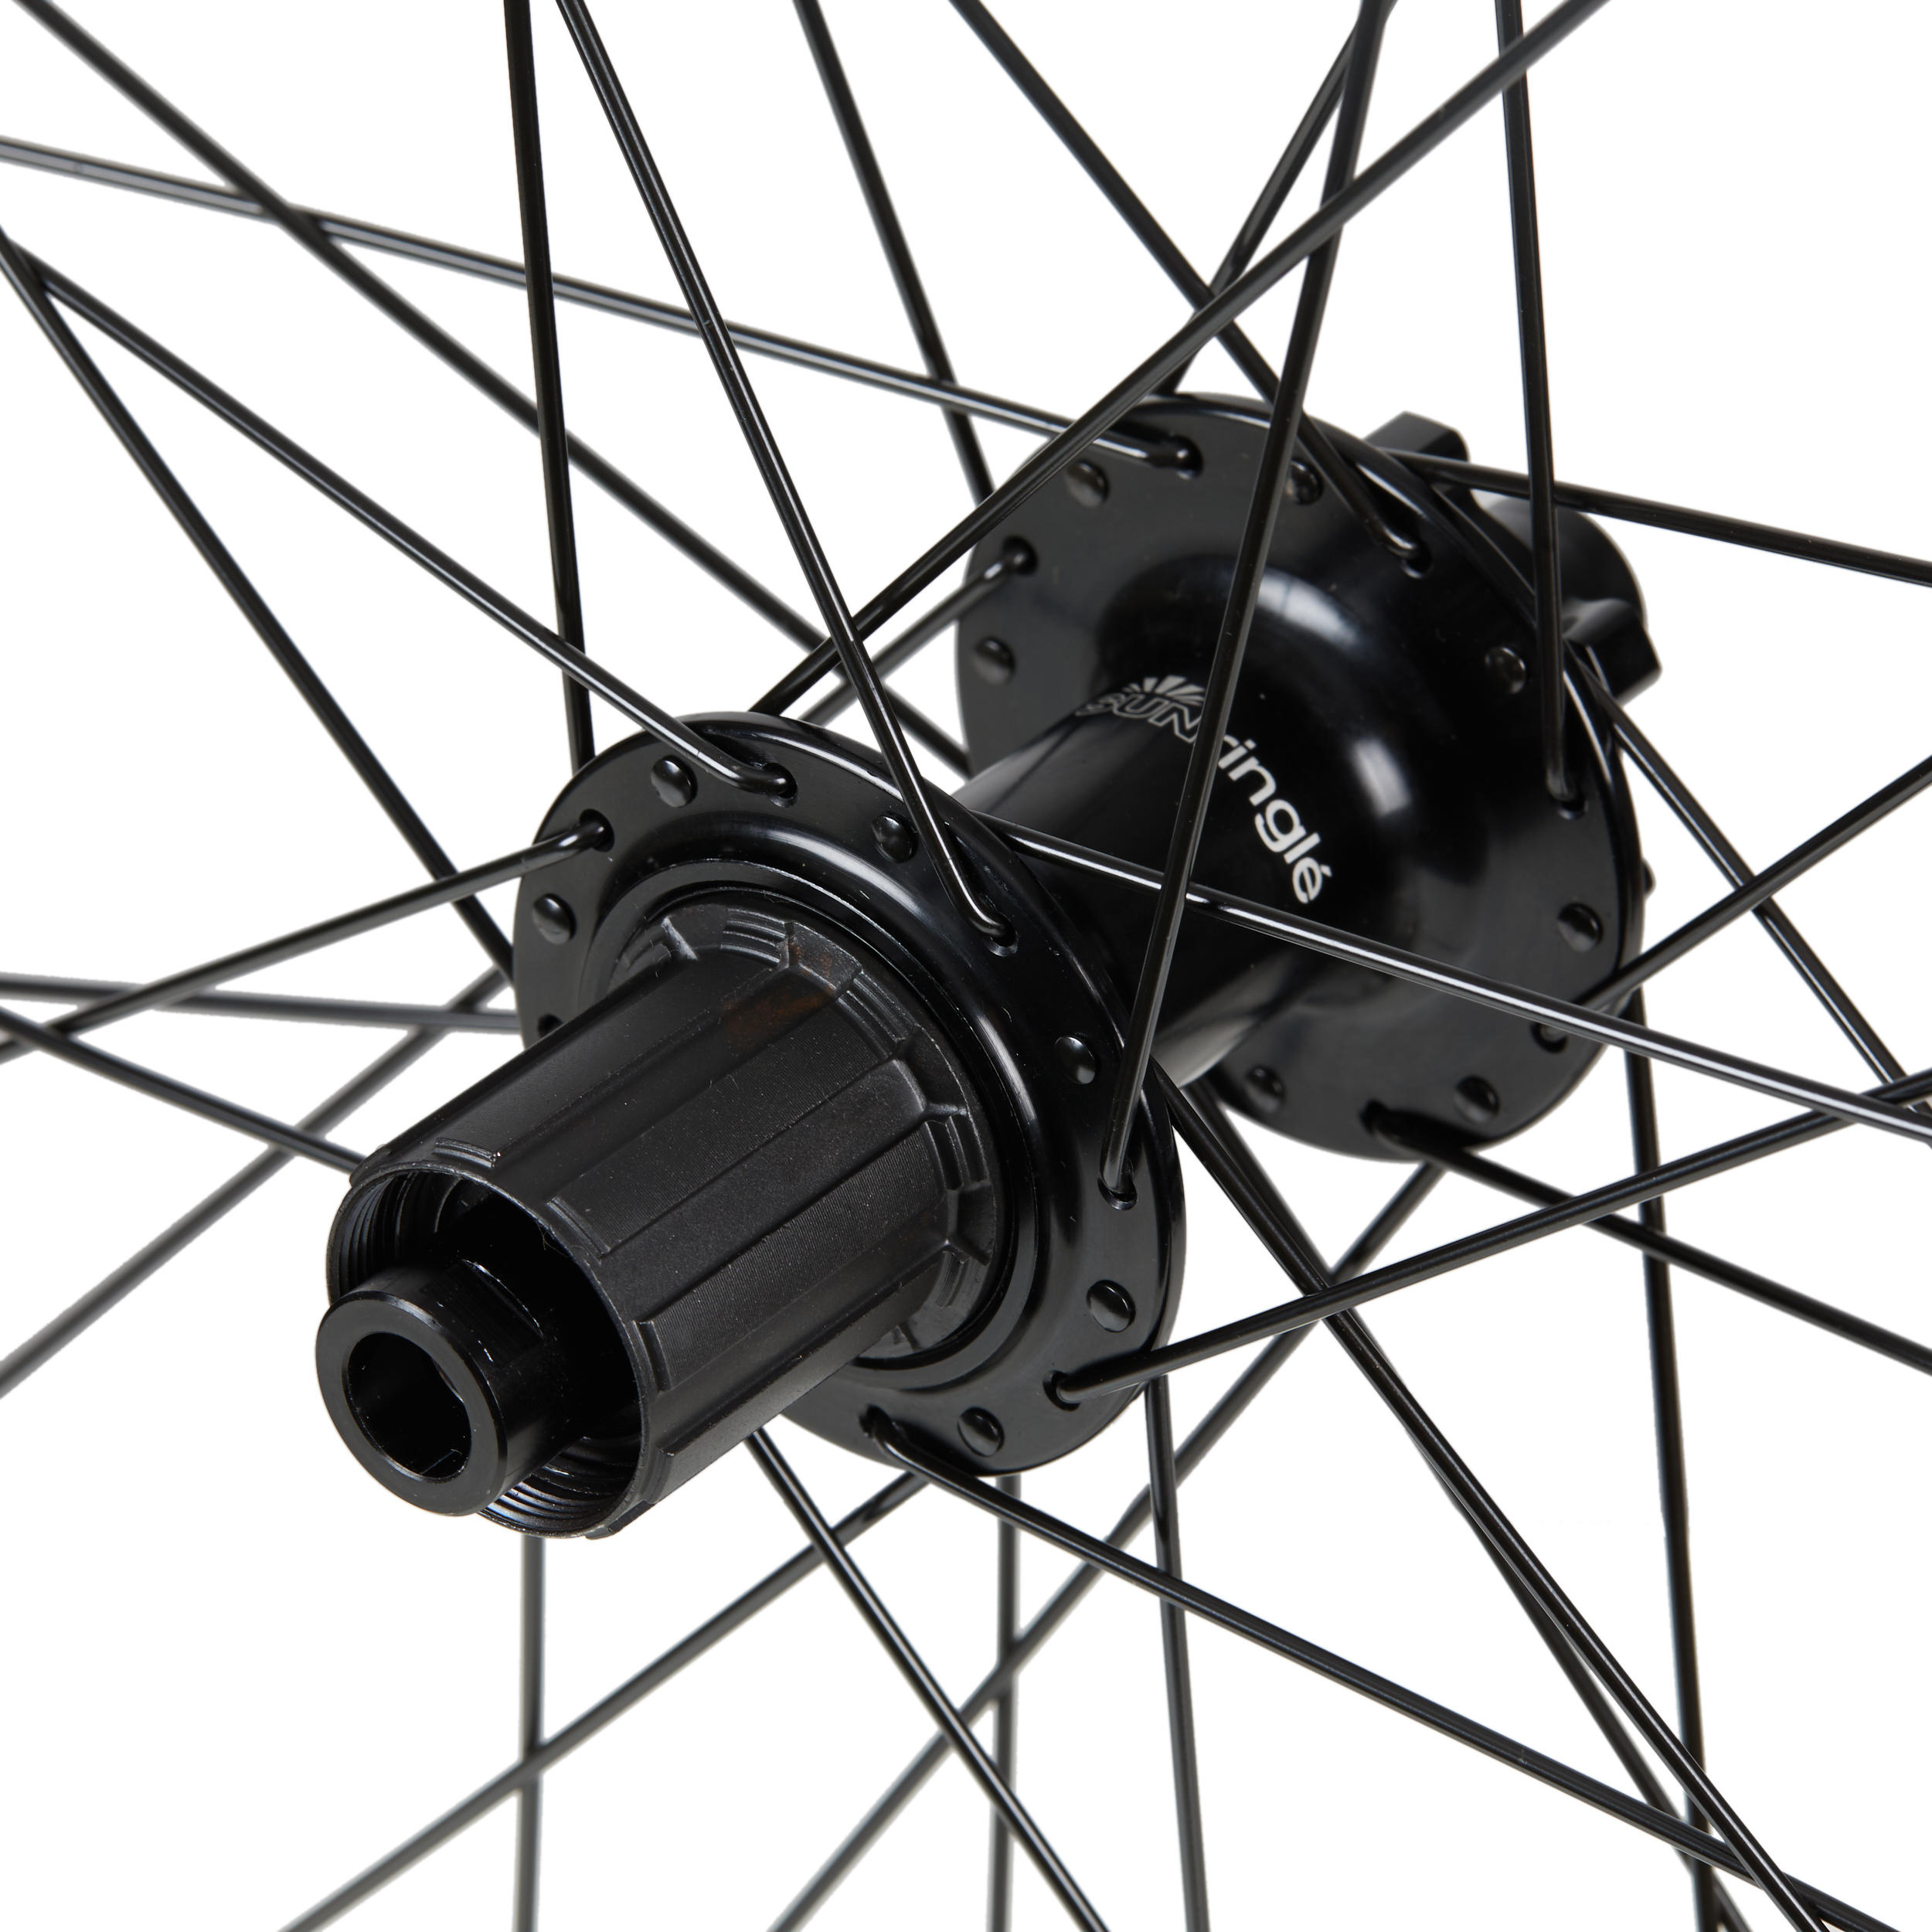 Mountain Bike Rear Wheel 27.5+ Double Wall Cassette Disc Boost 12x148 Duroc 40 2/3